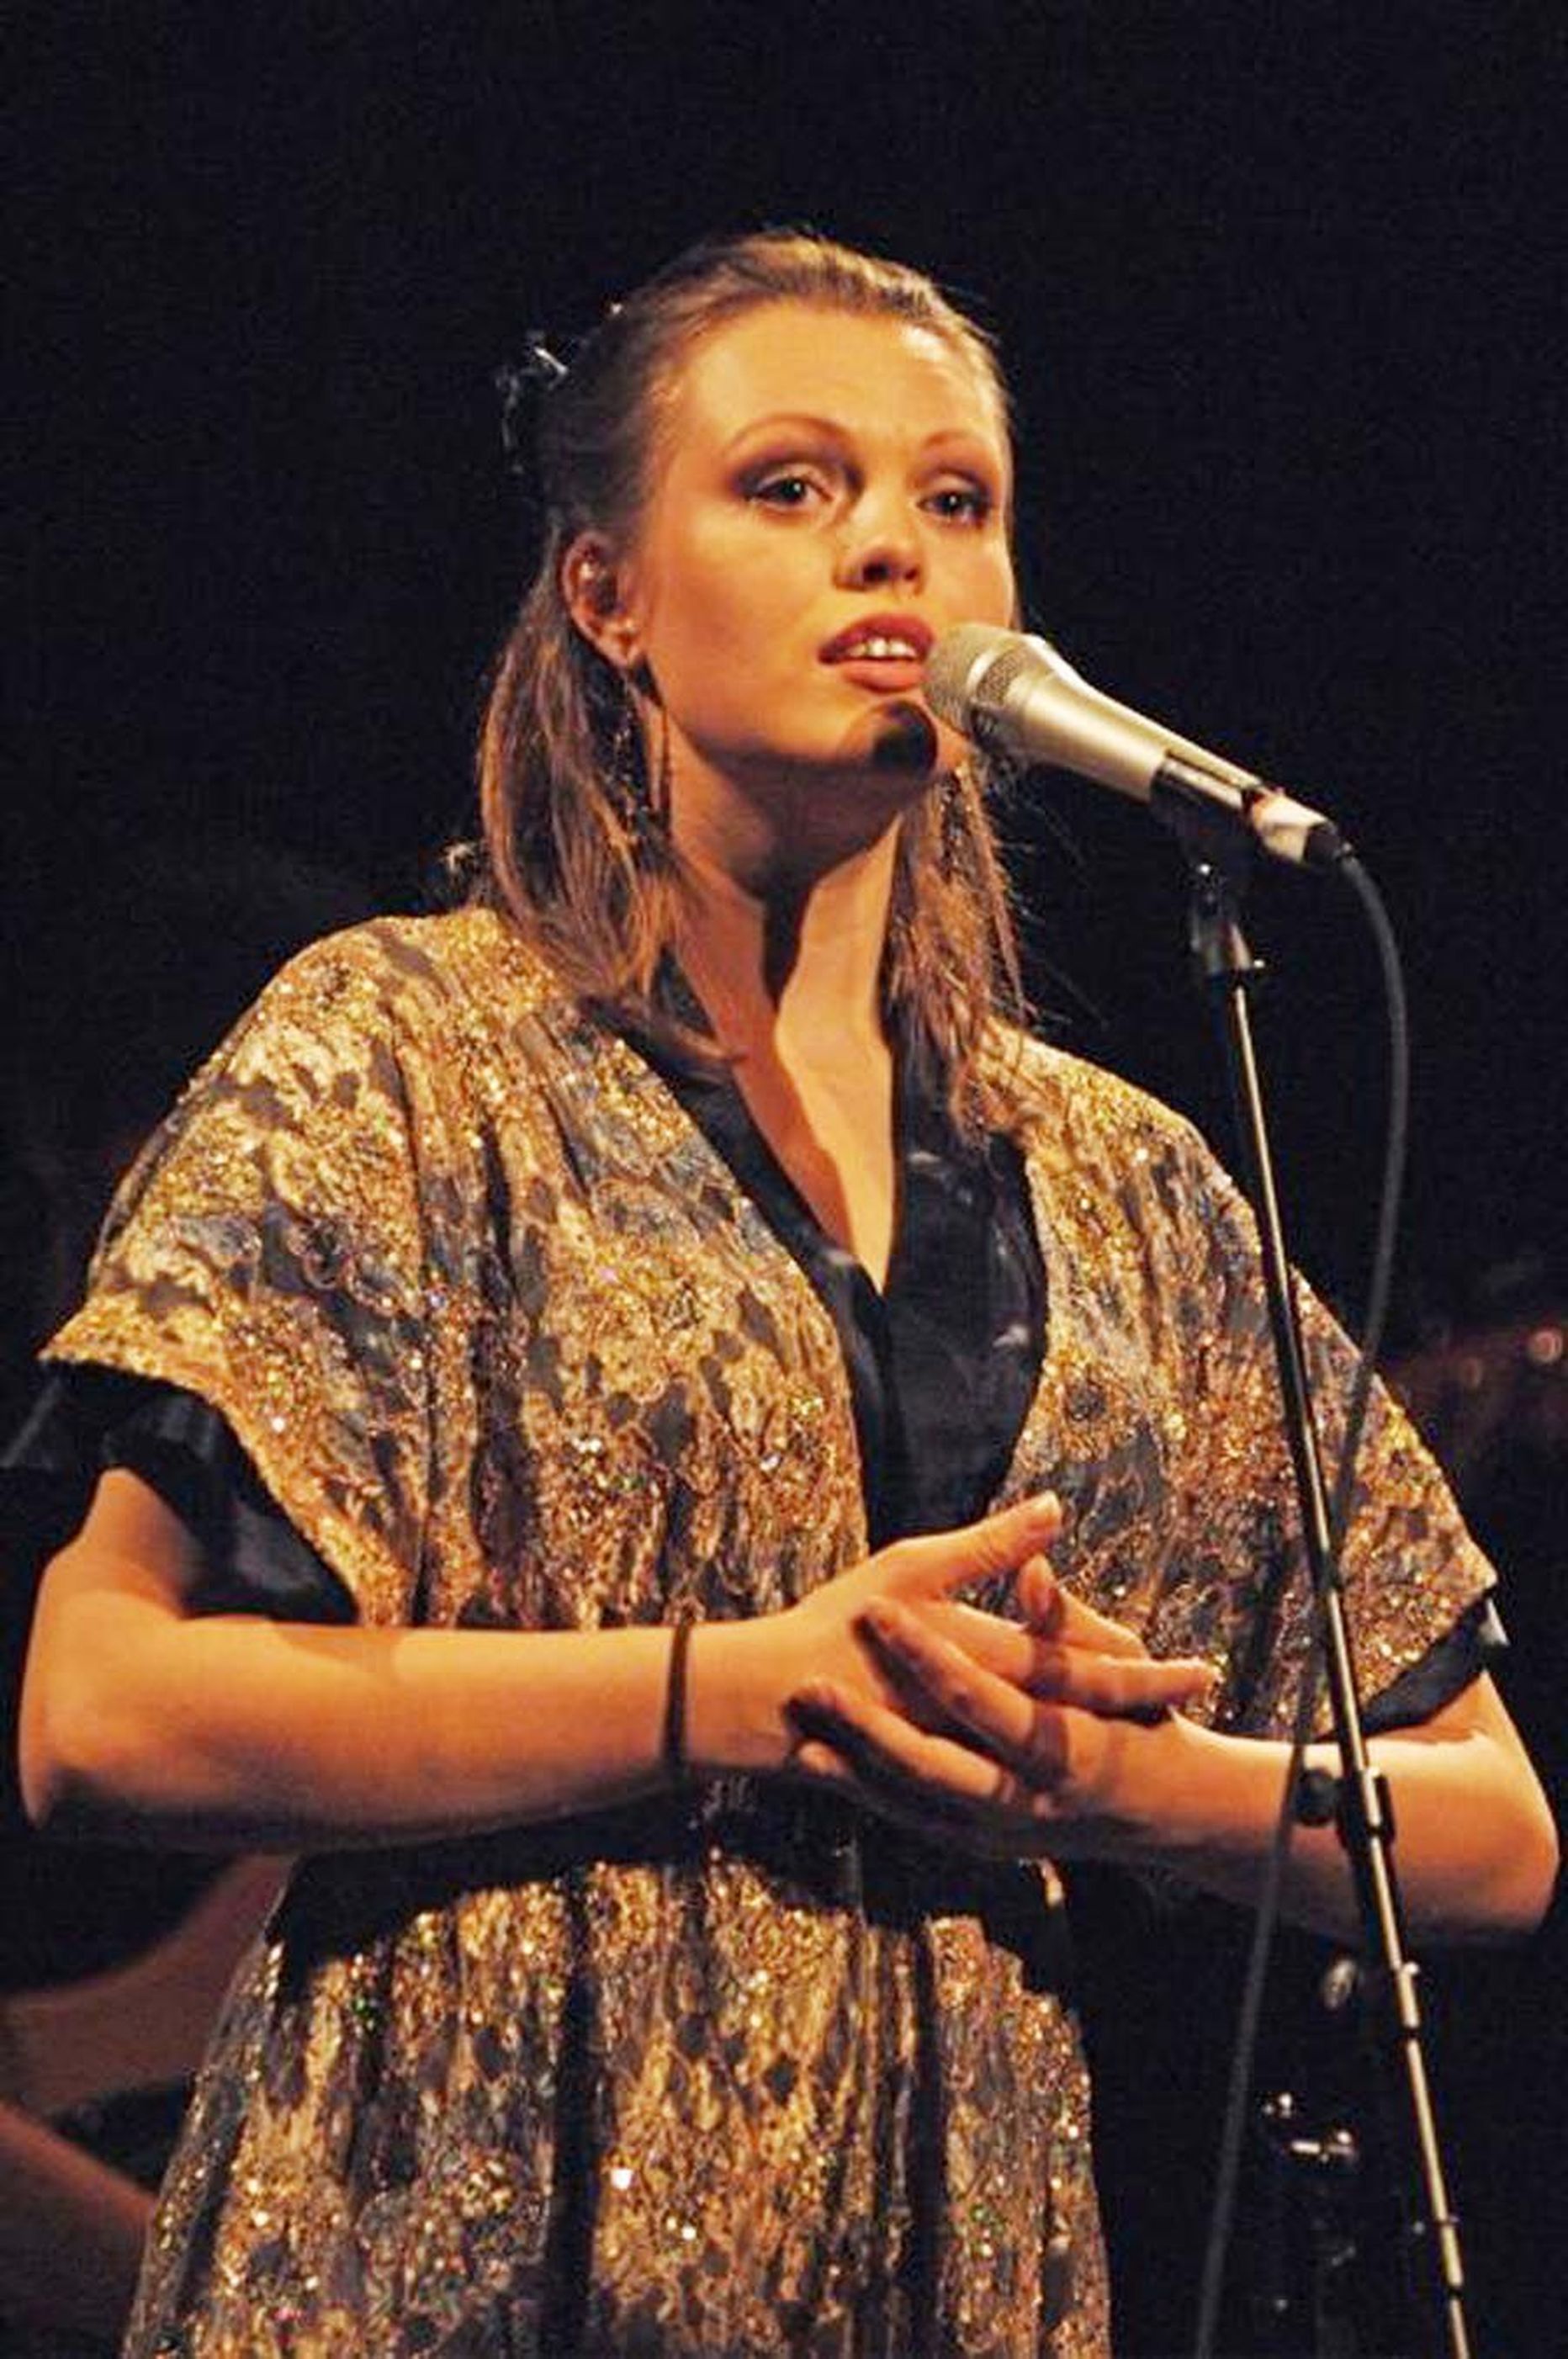 Kontserdiga “Valge ingel” esitleb Ingrid Lukas oma debüütalbumit.